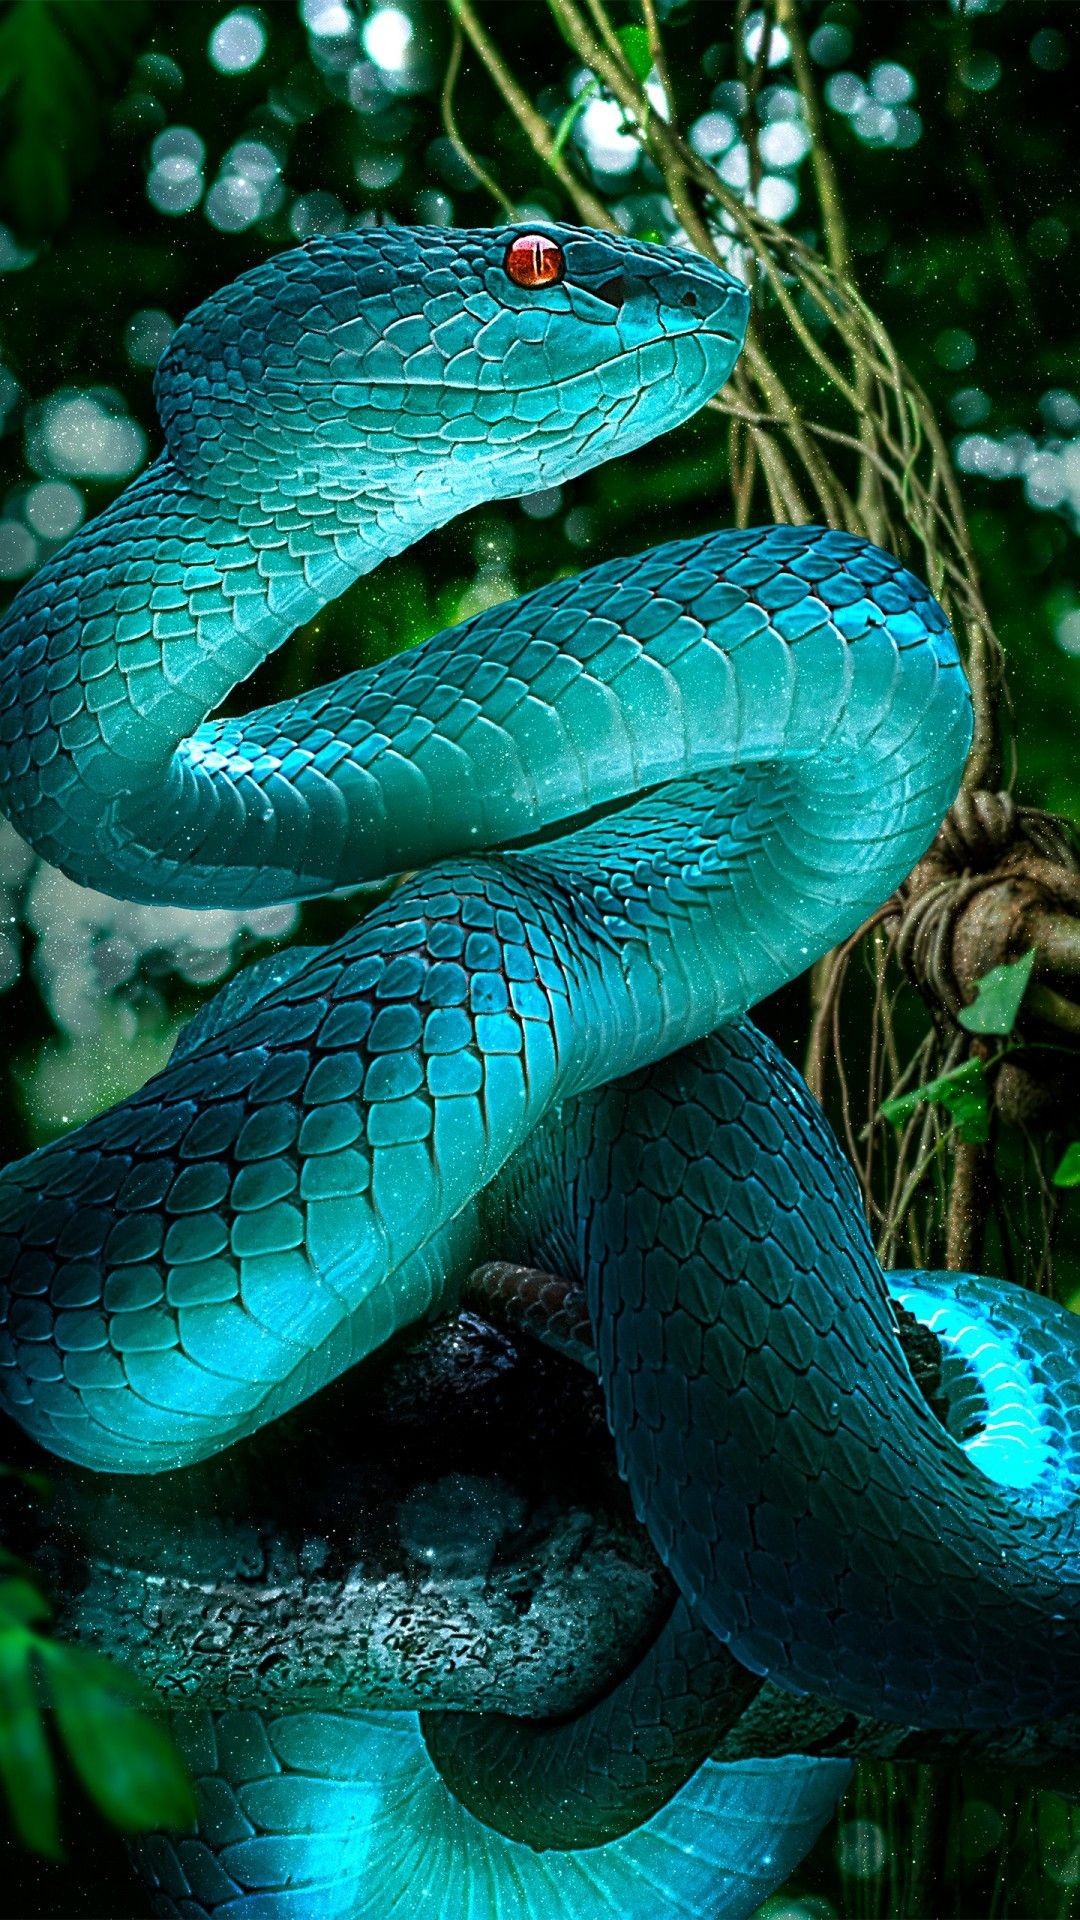 Beautiful blue snake